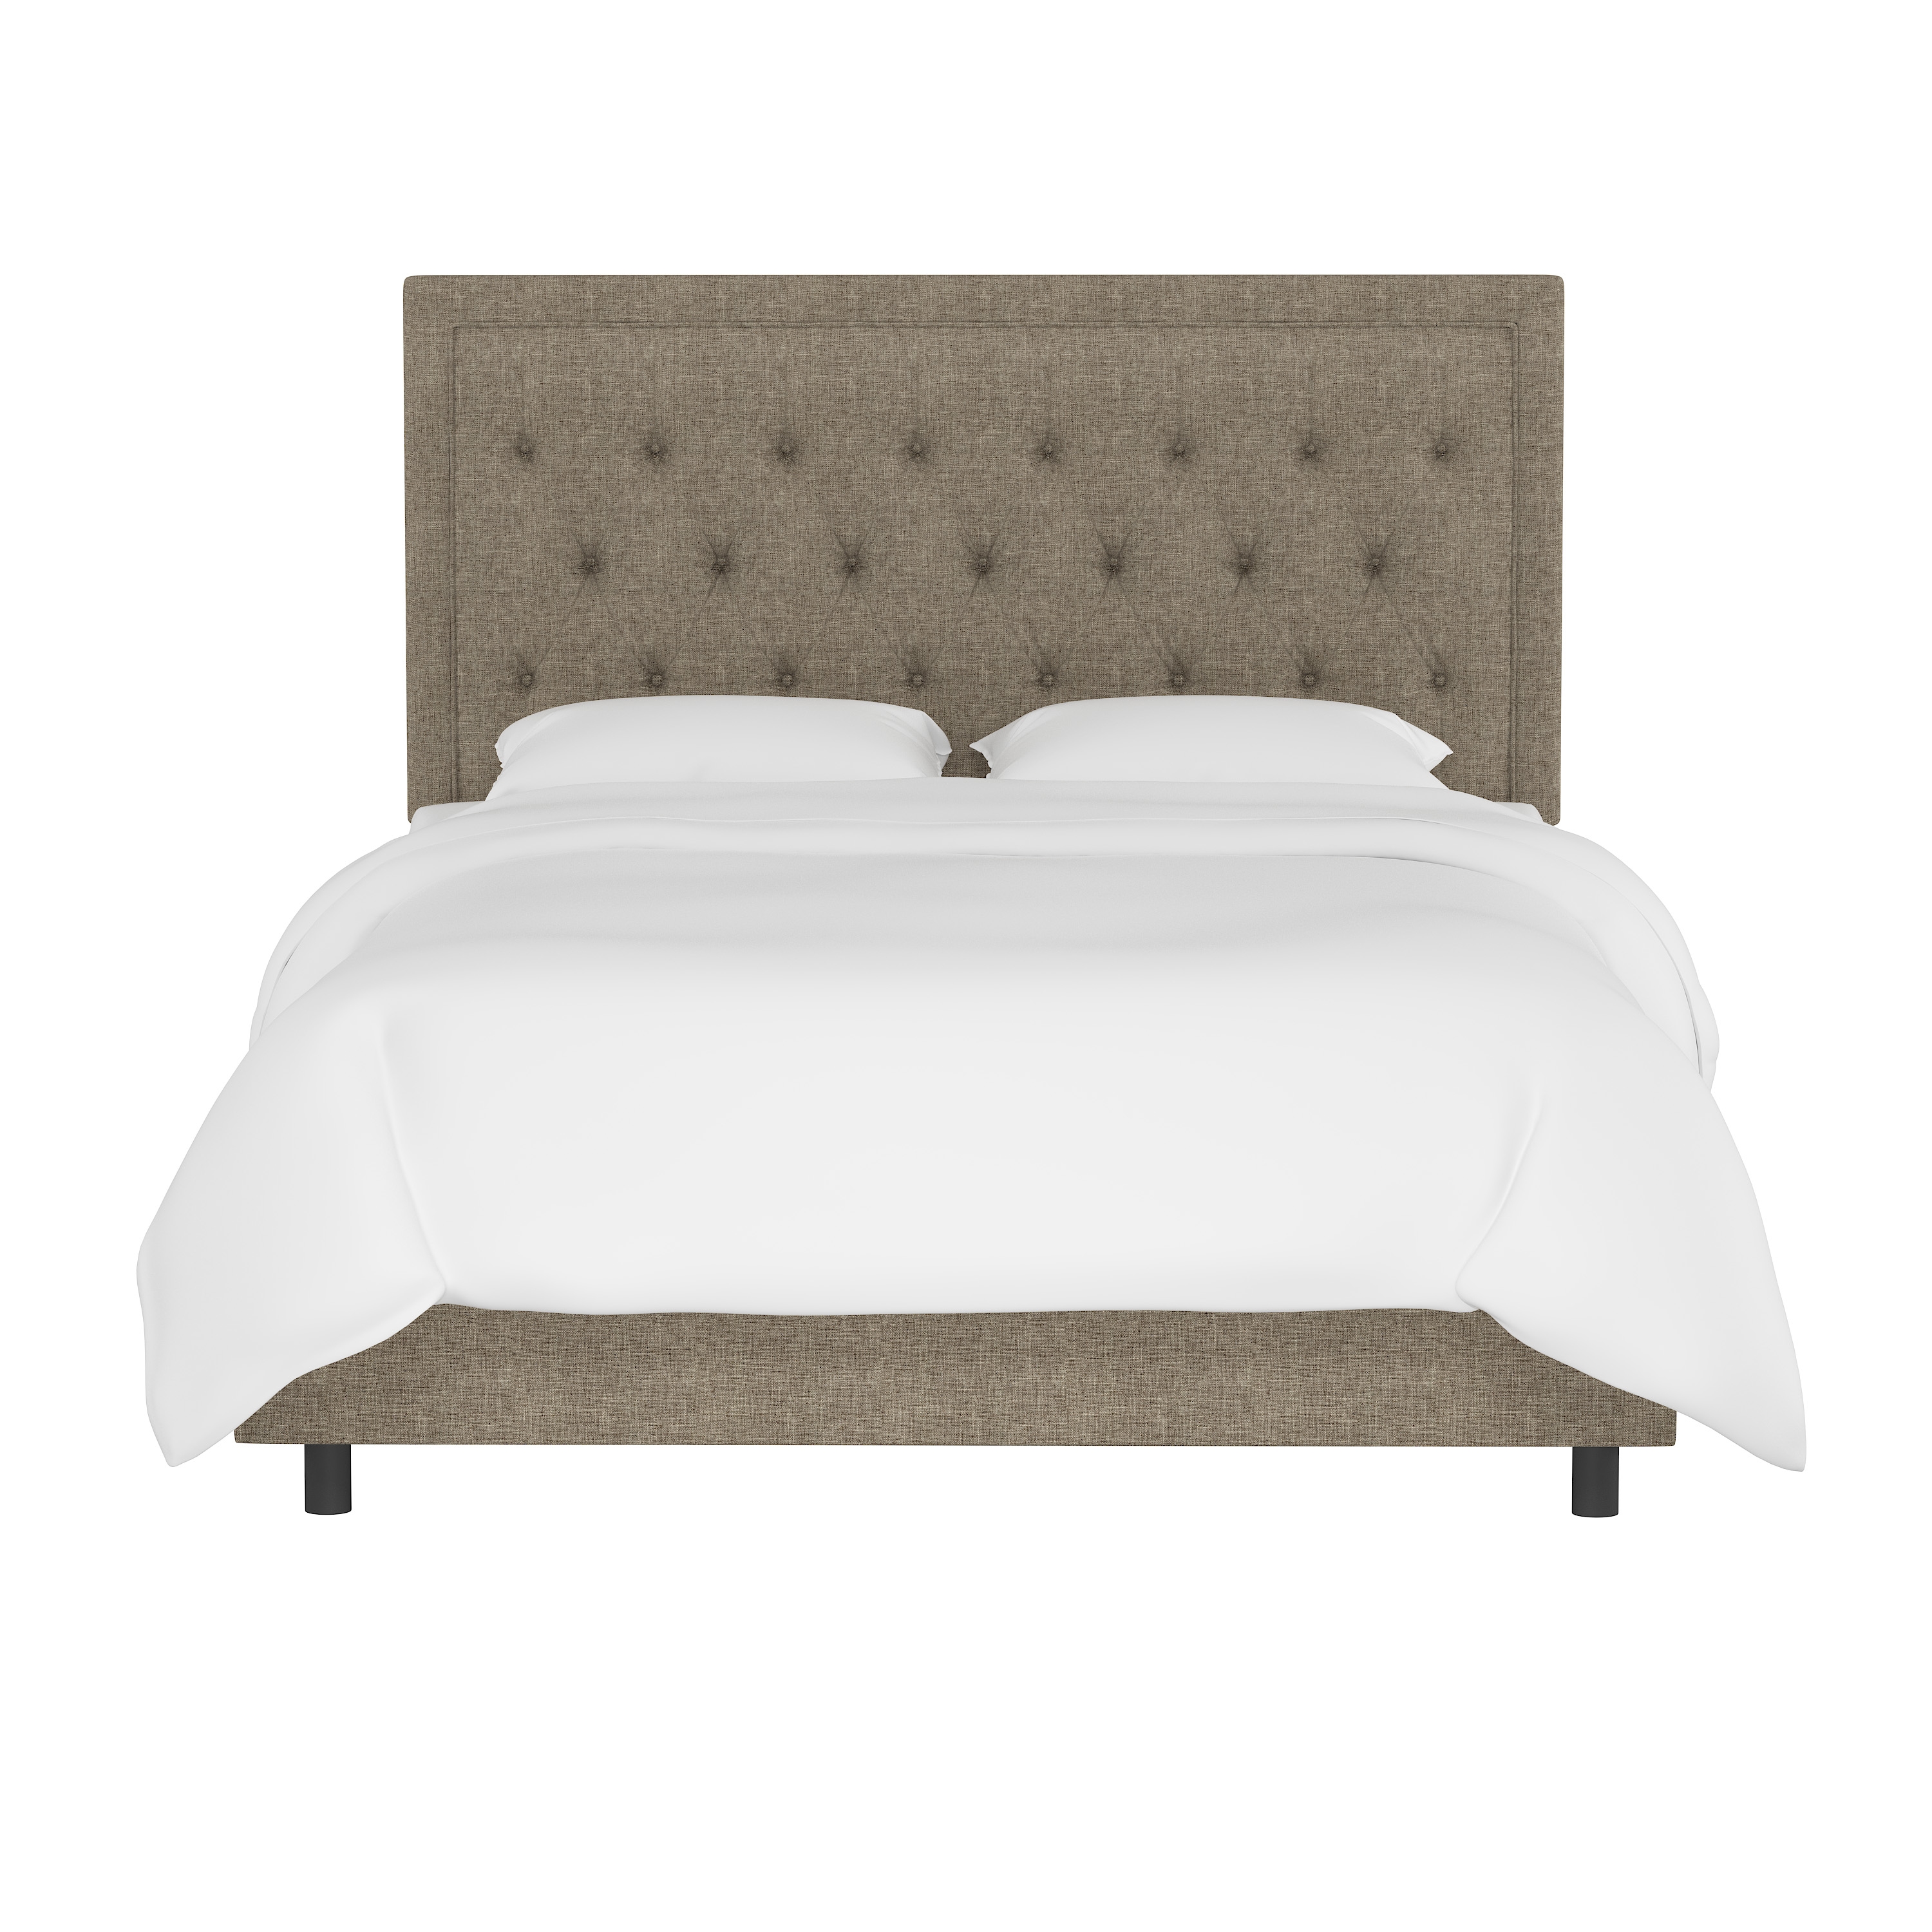 Lafayette Bed, Queen, Linen - Image 1